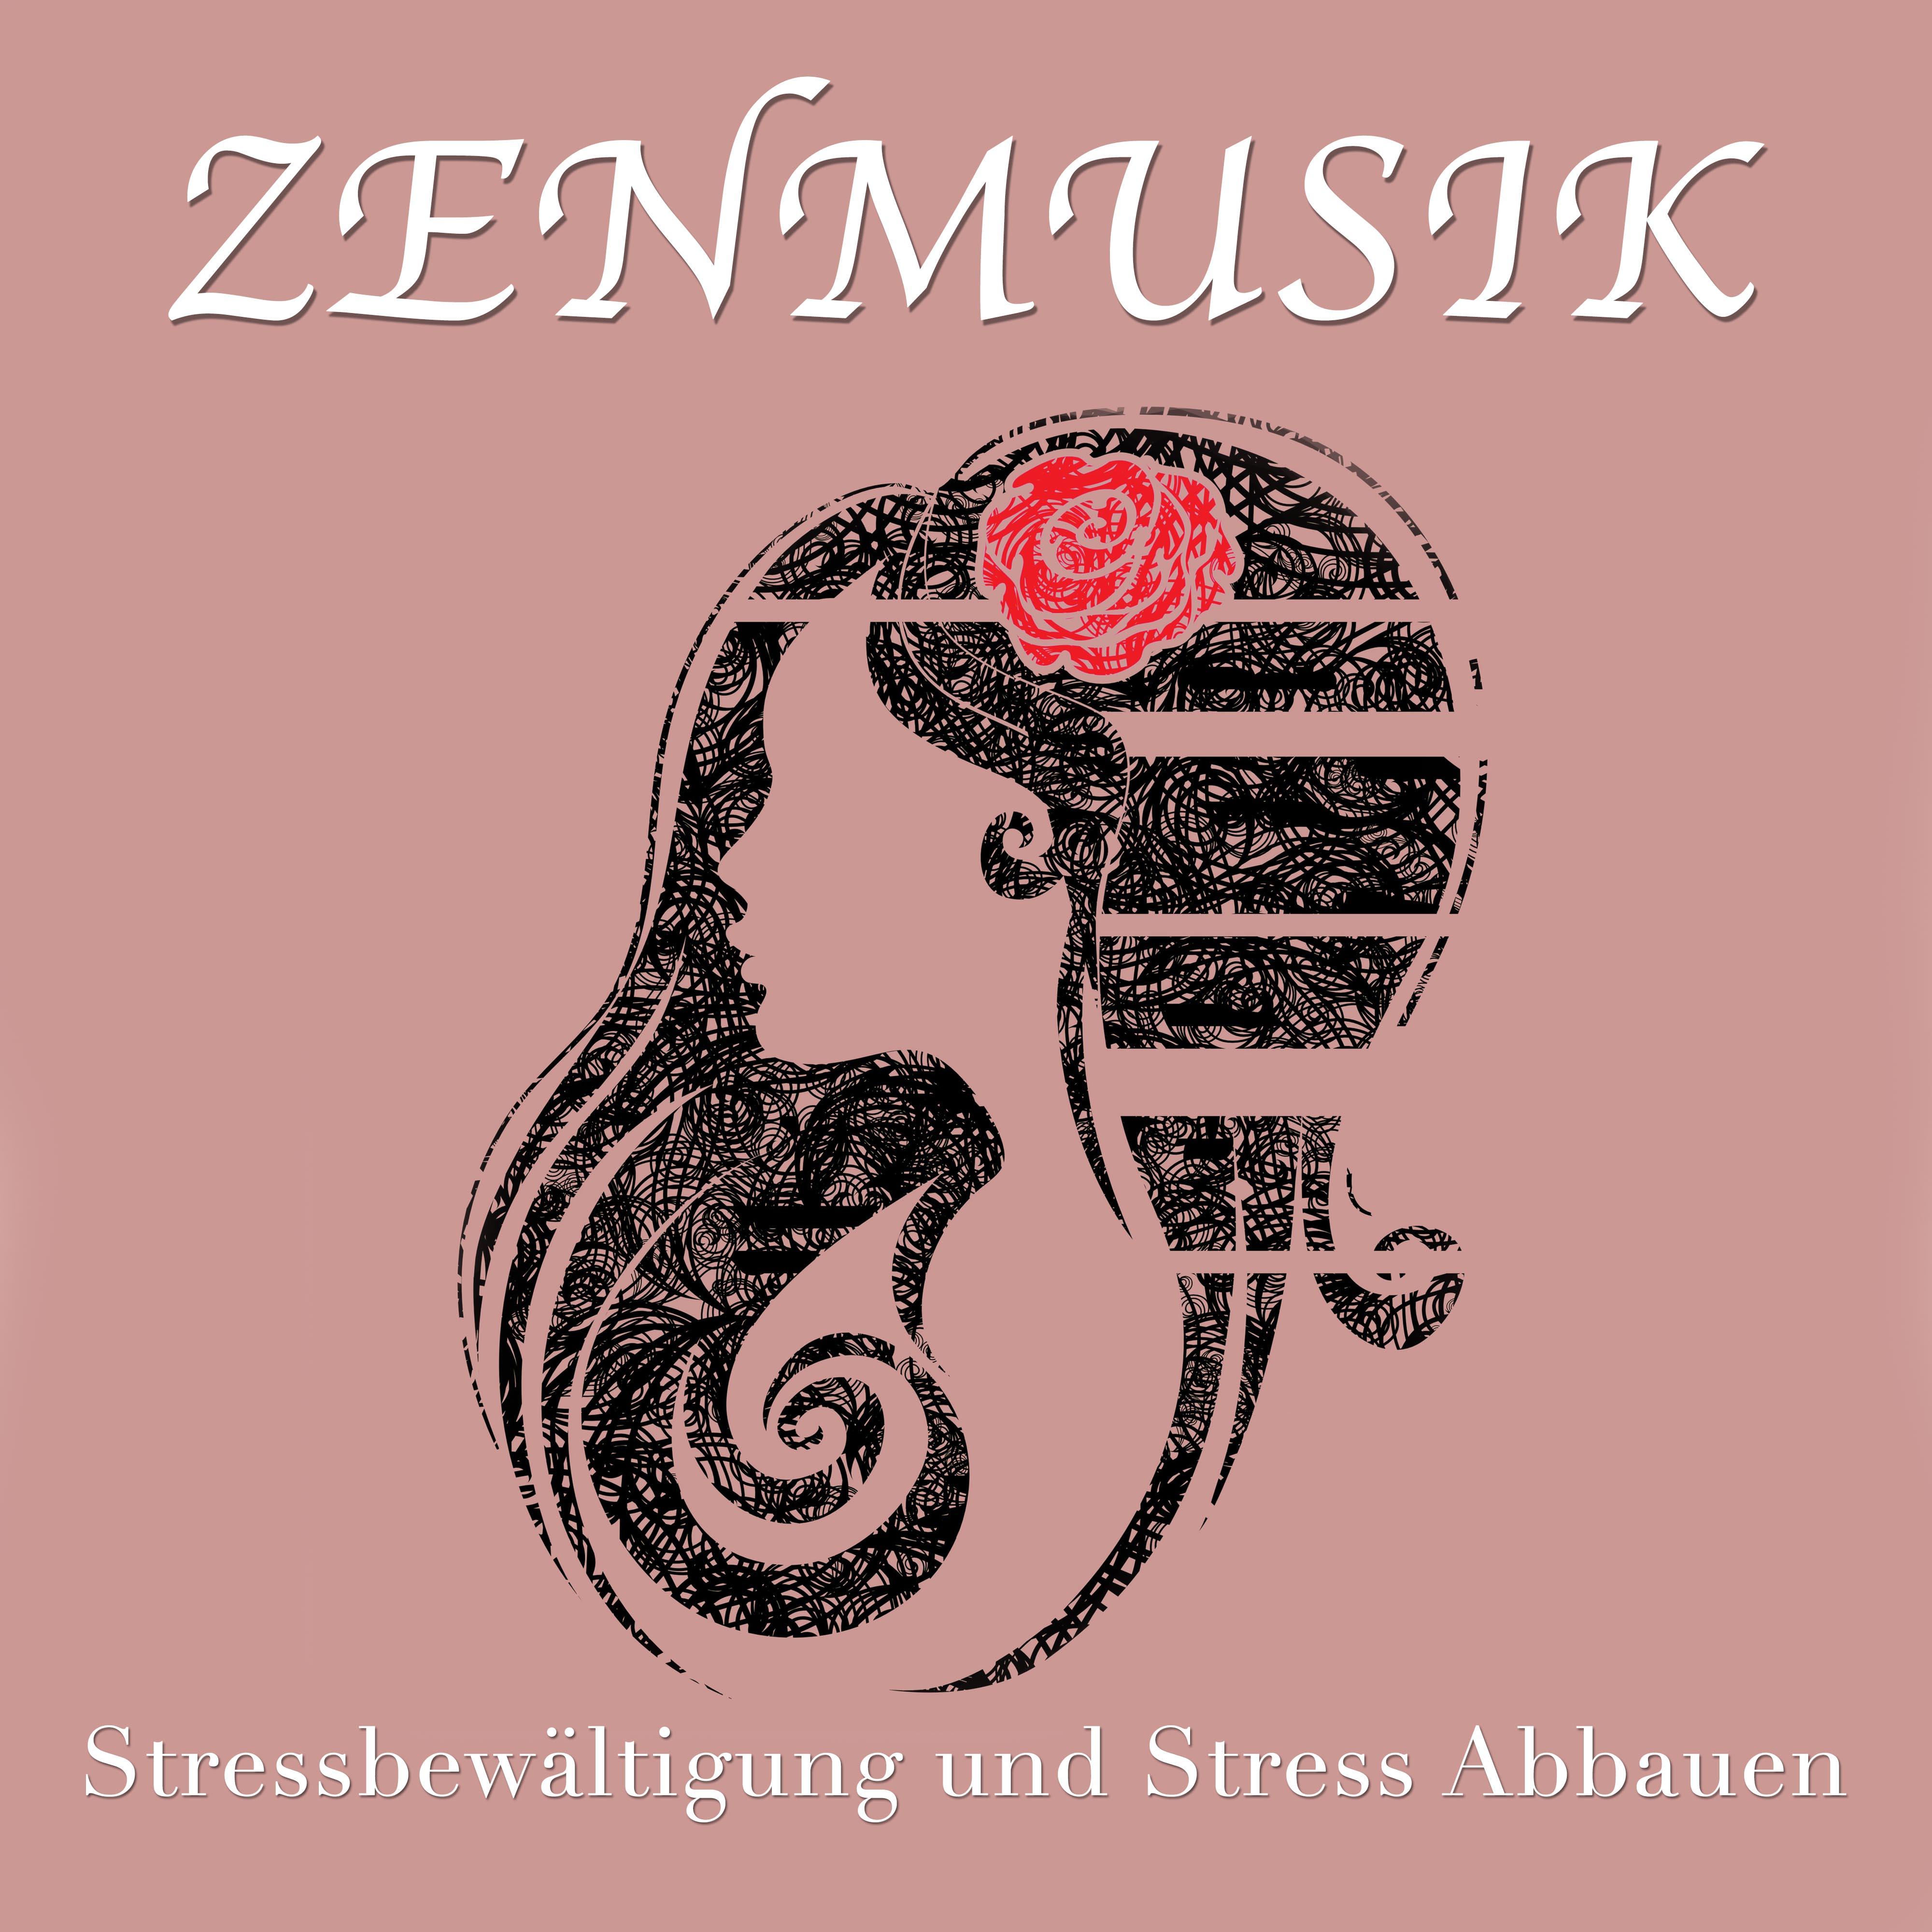 Zenmusik - Stressbewältigung und Stress Abbauen. Die Perfekte Musik zur Entspannung